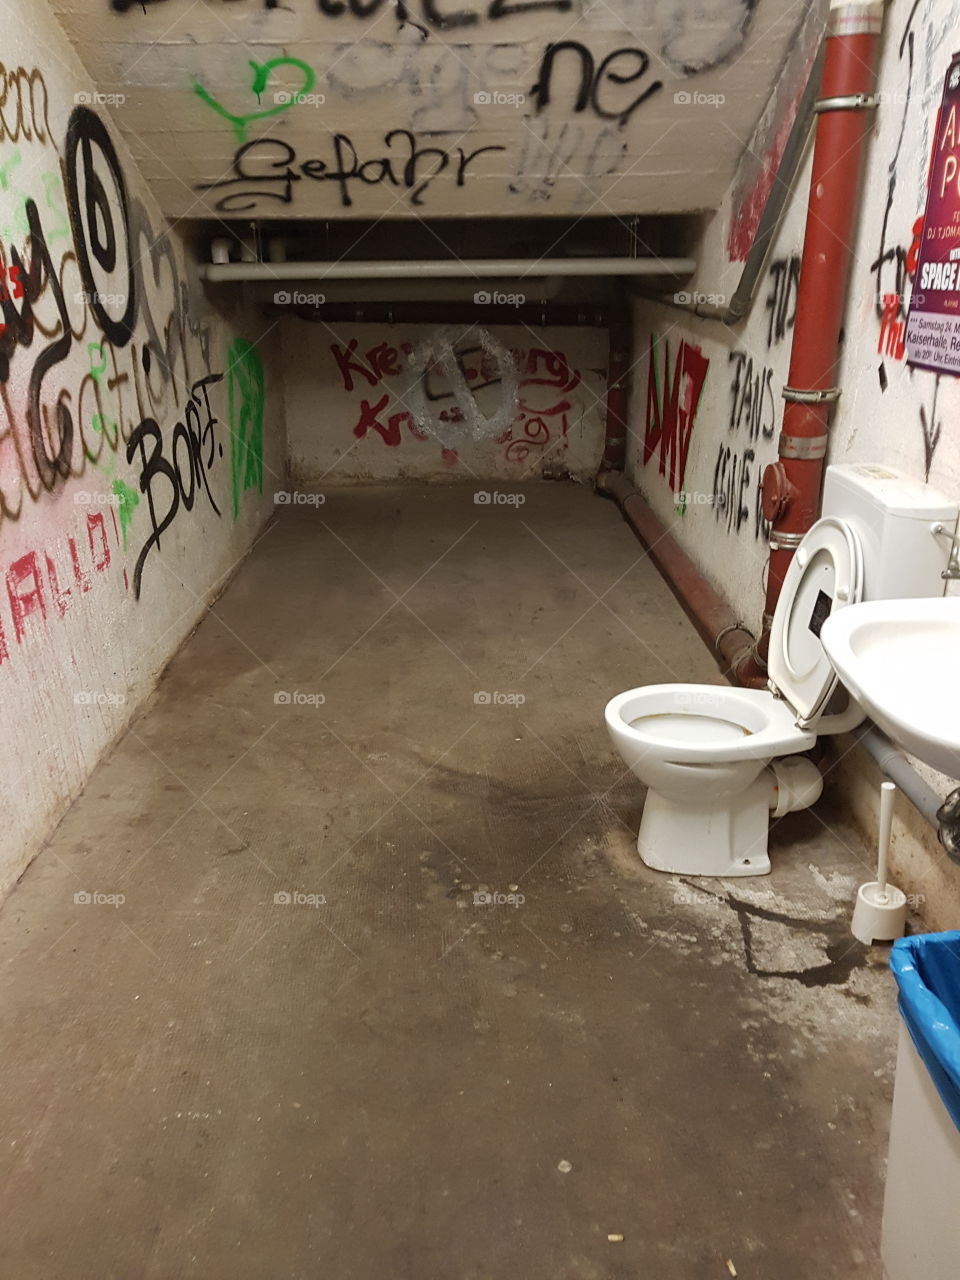 weird toilet